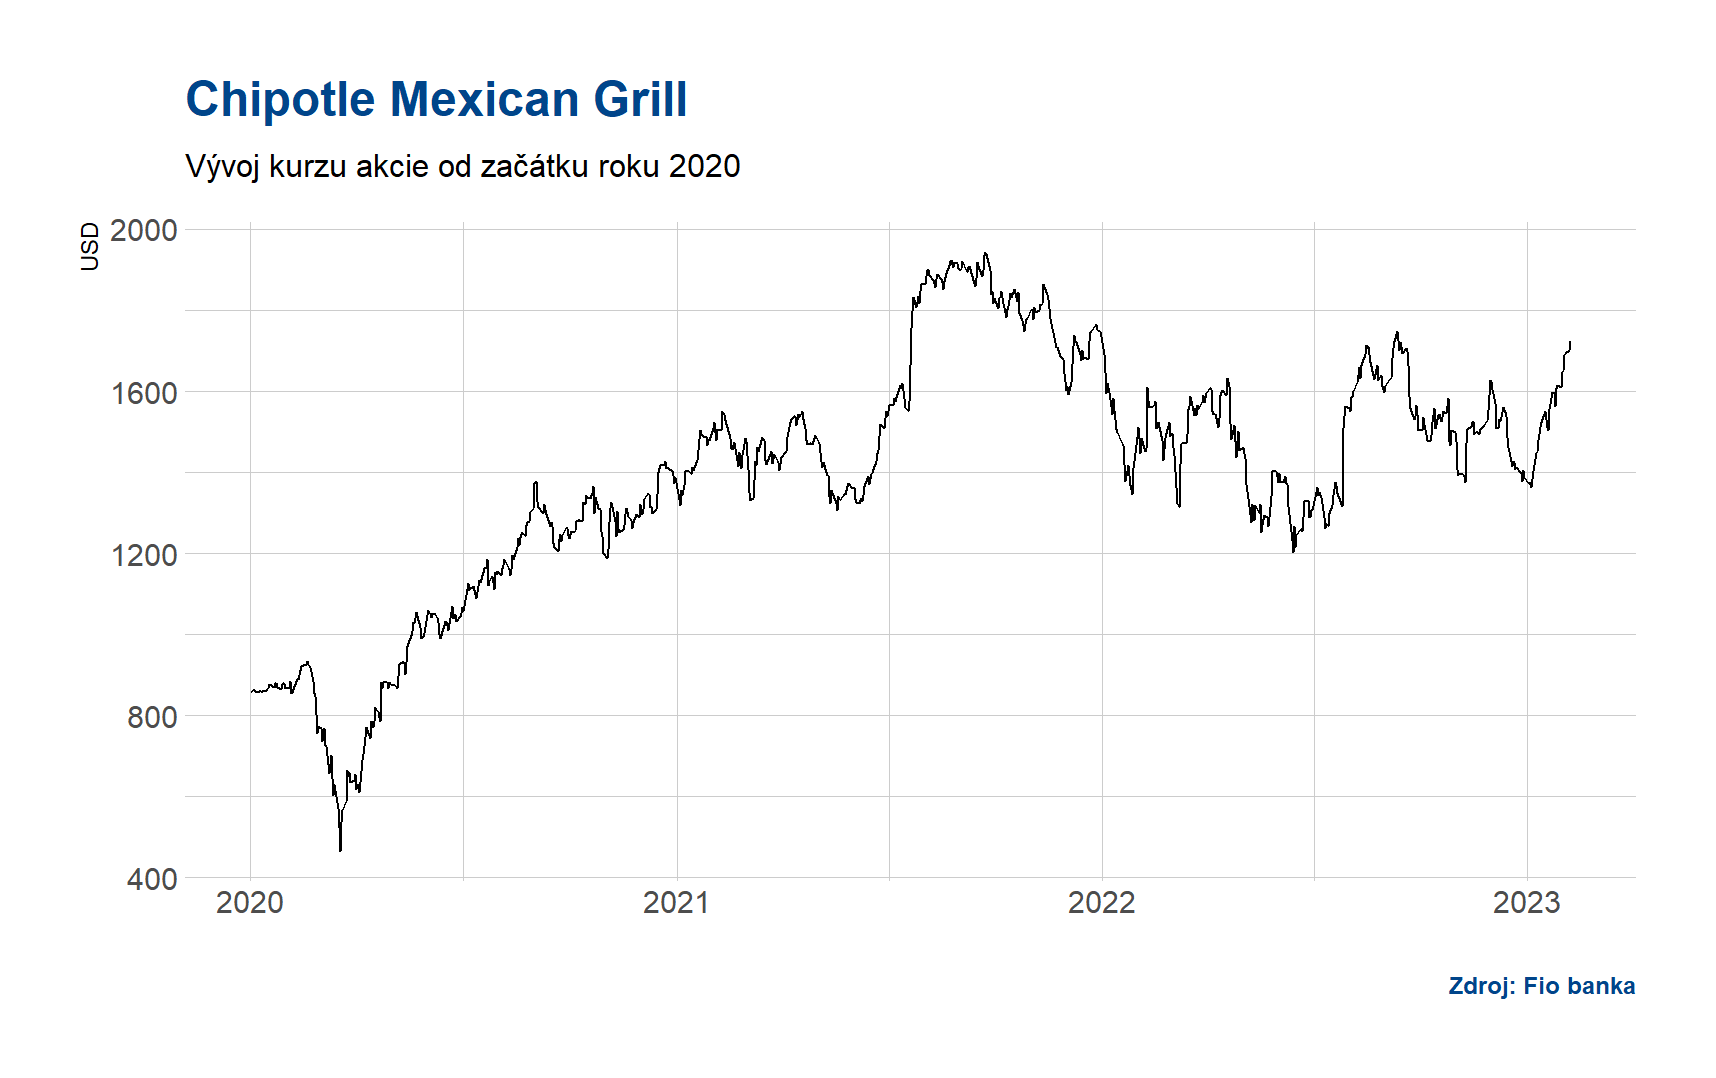 Vývoj akcií Chipotle Mexican Grill